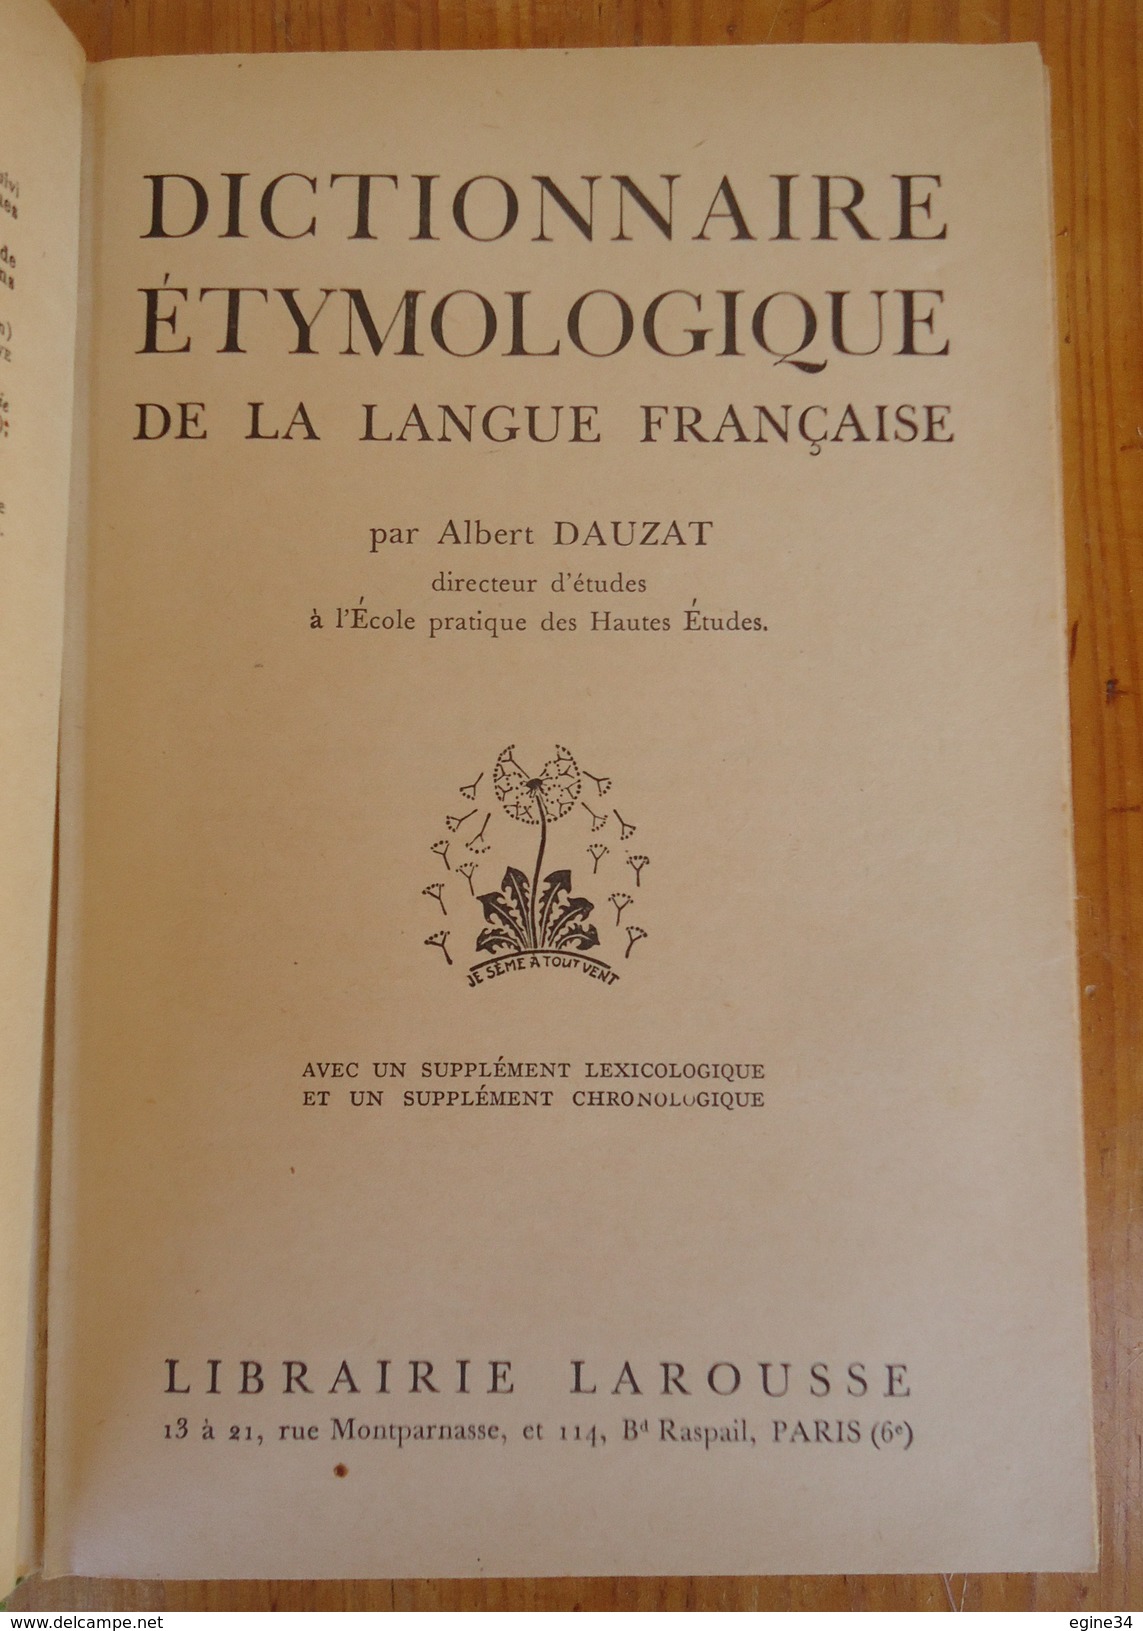 Larousse-Paris - Albert Dauzat - Dictionnaire Etymologique - 1954 - Dictionnaires